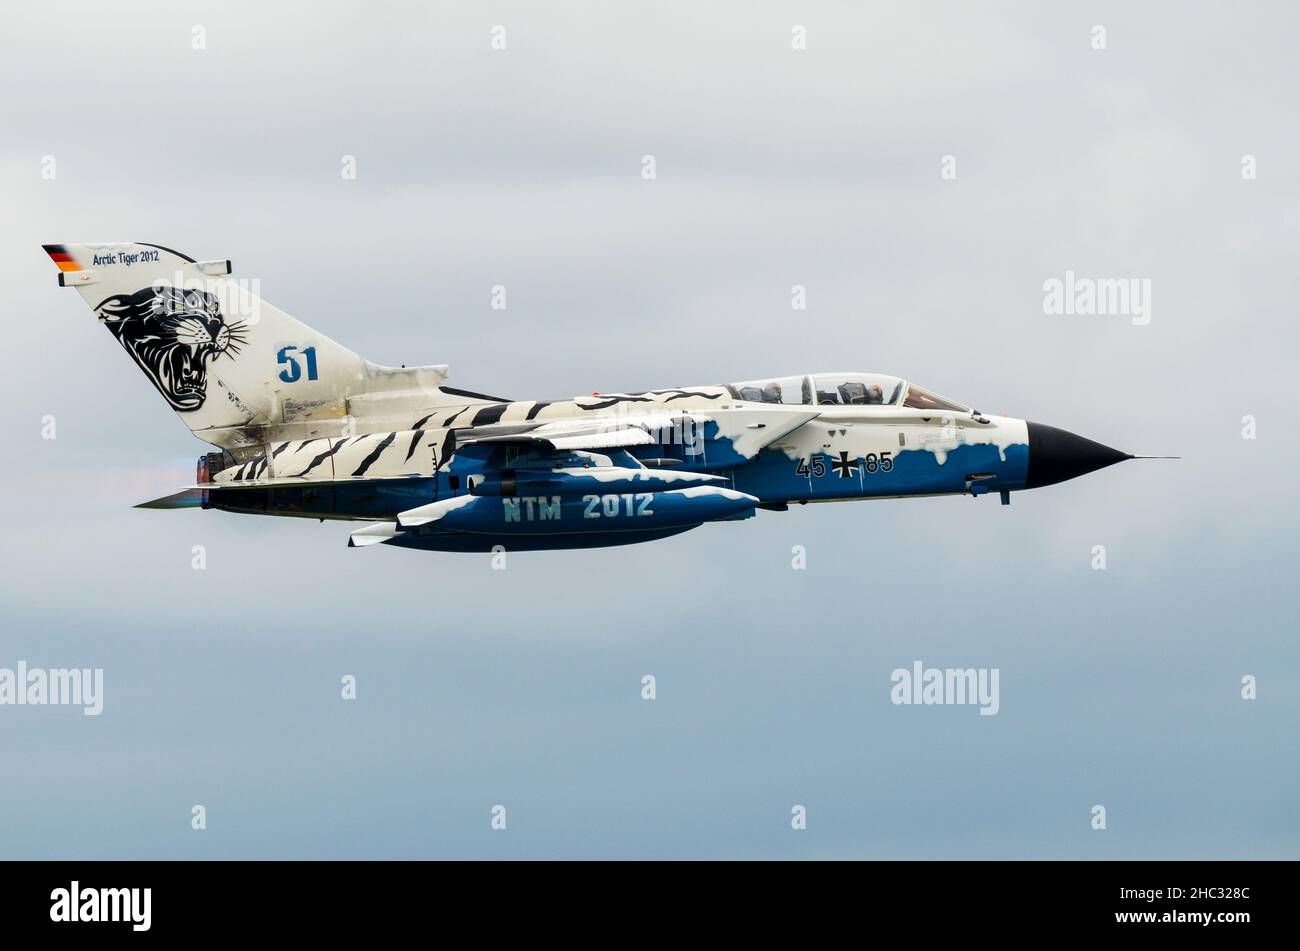 Die deutsche Luftwaffe Panavia Tornado IDS Jet-Jagdflugzeug 45+85 in spezieller Farbgebung des Arctic Tiger 2012. NATO Tiger treffen 2012 Markierungen Stockfoto